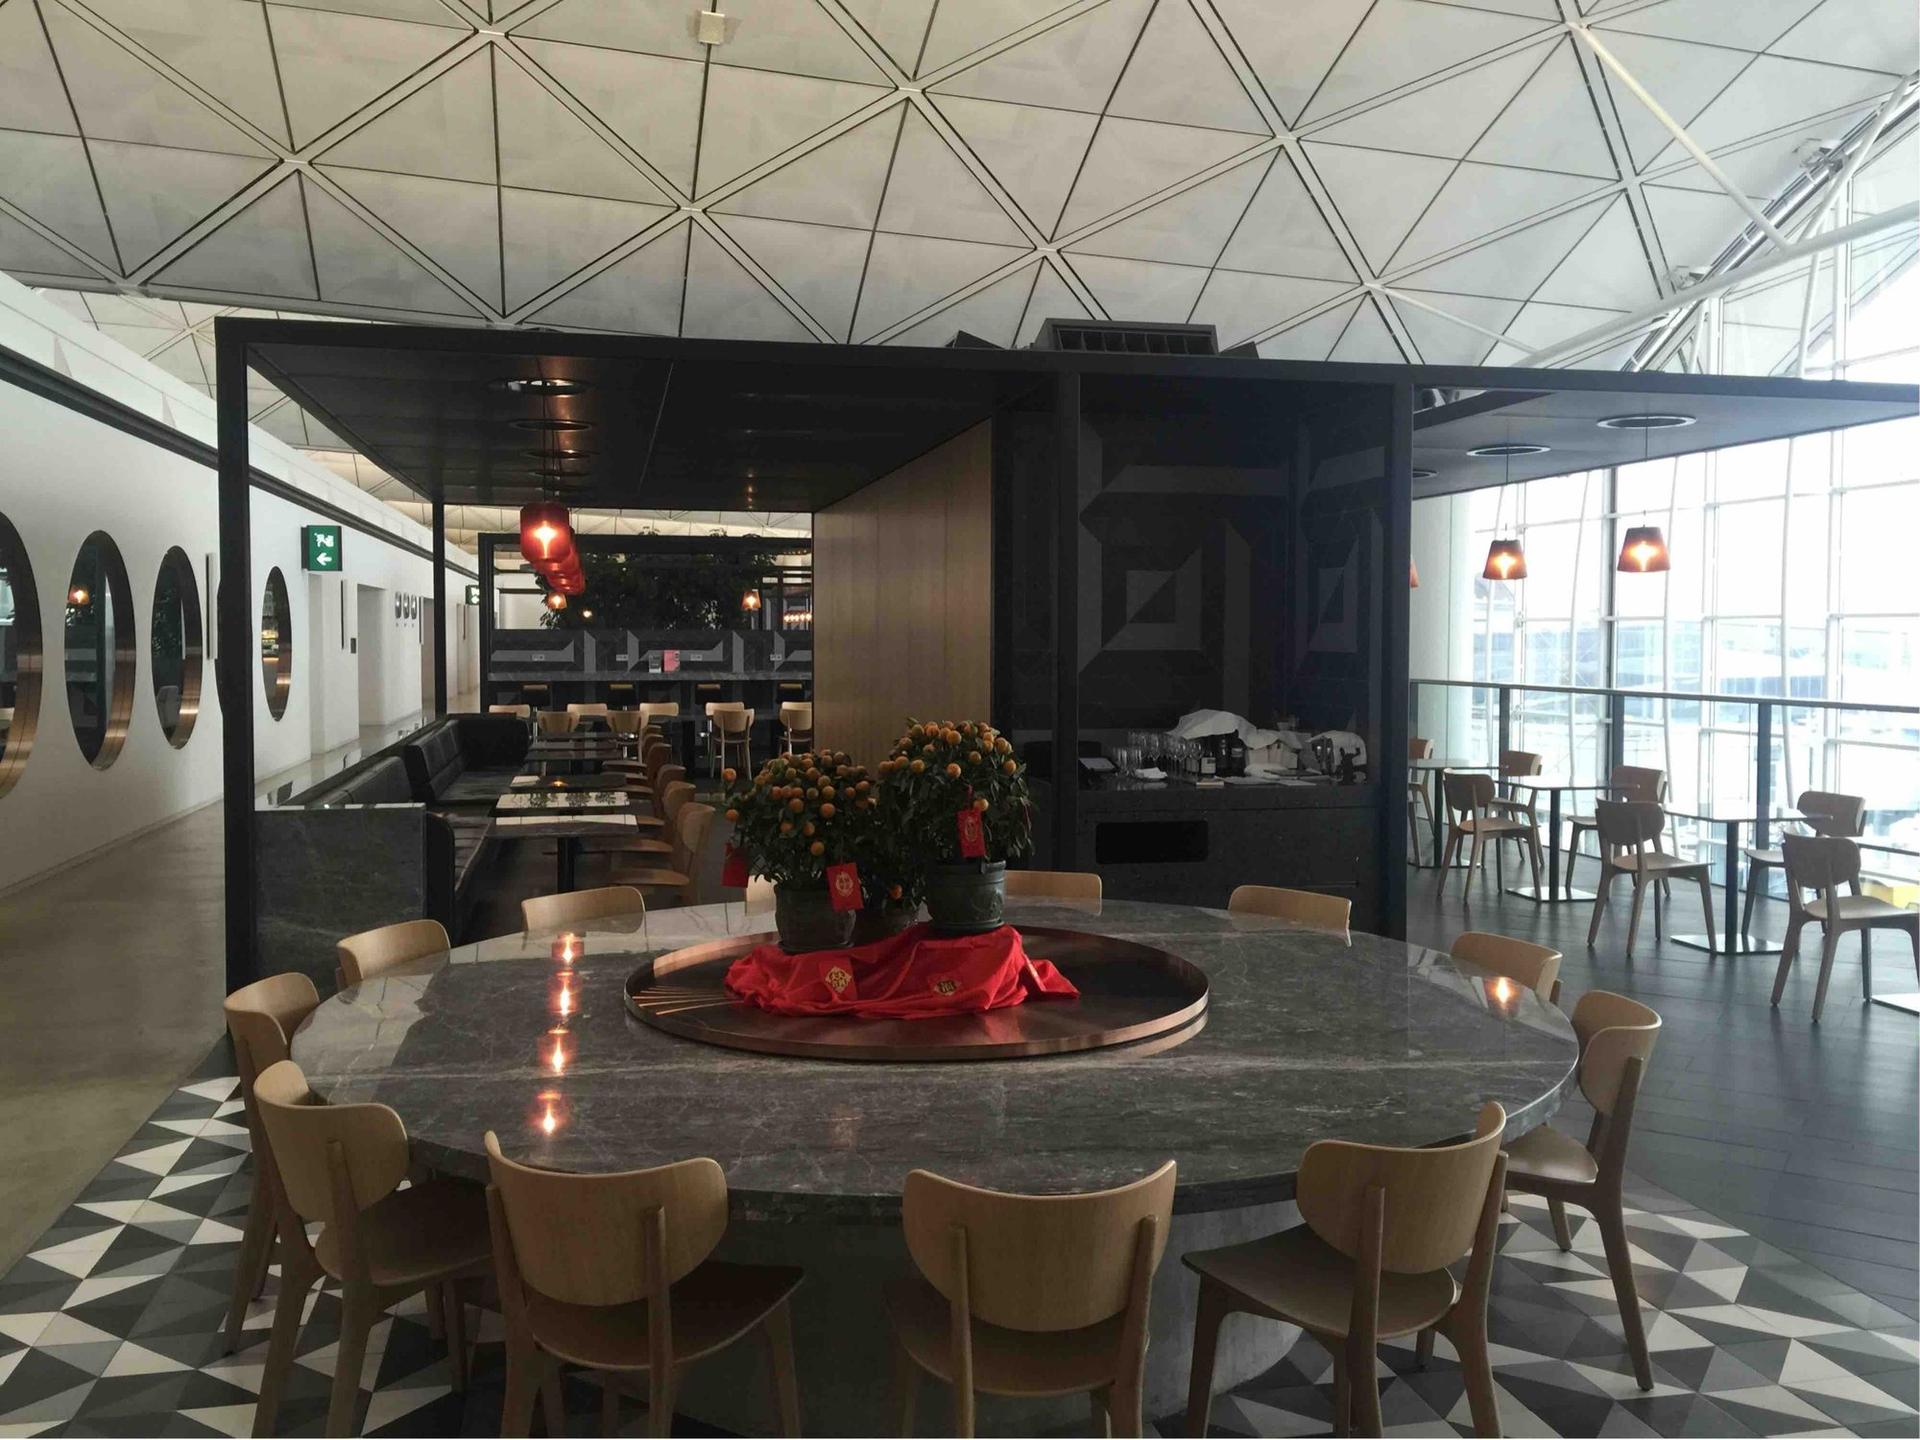 The Qantas Hong Kong Lounge image 42 of 99